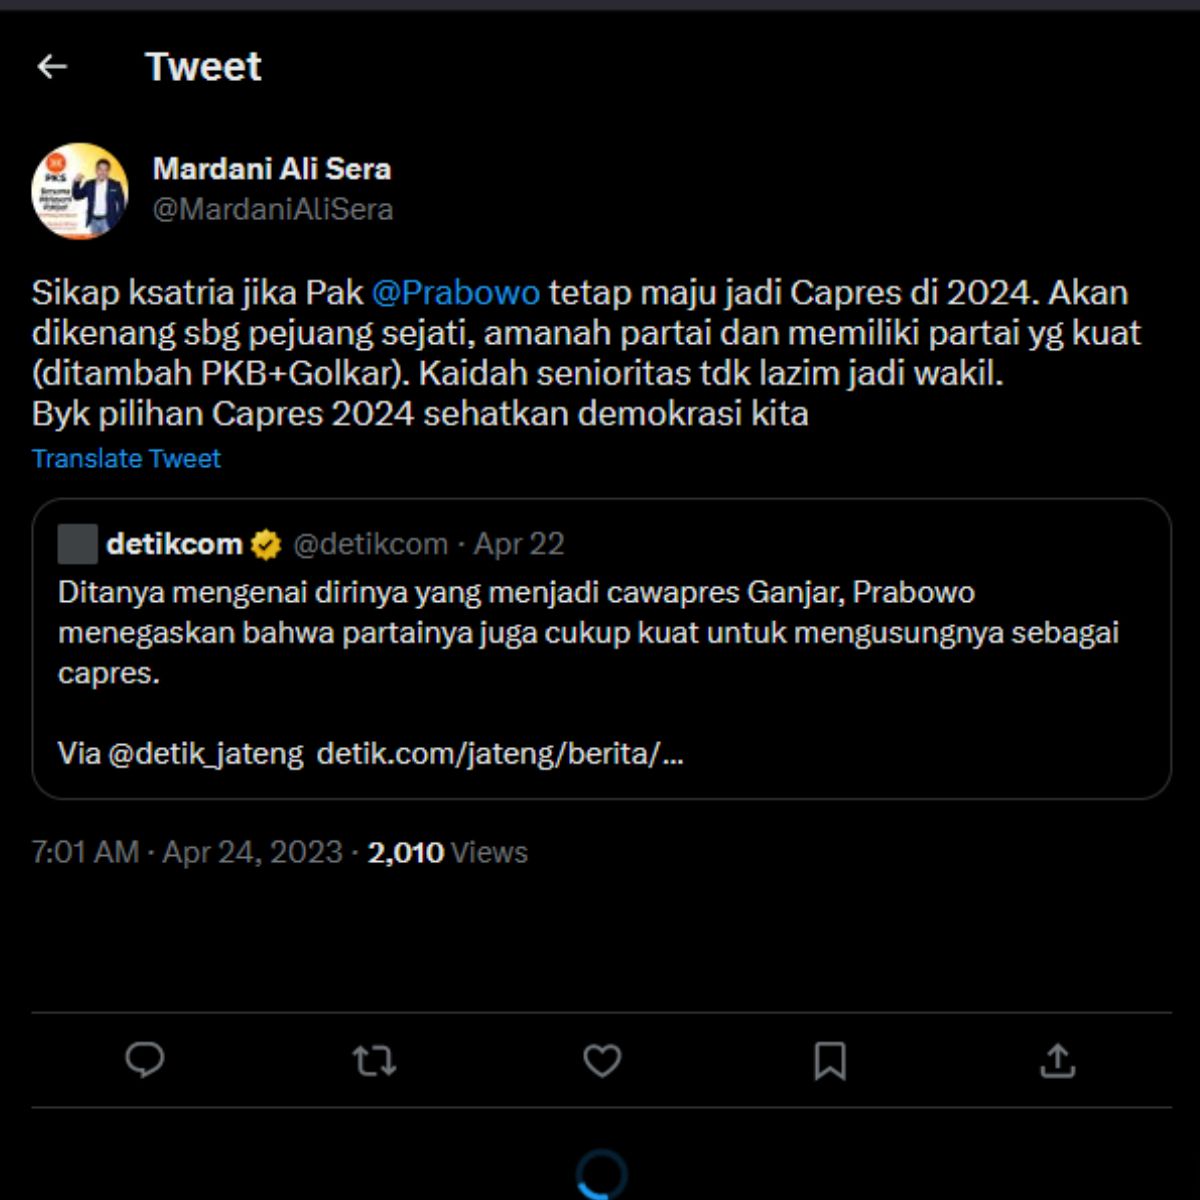 Cuitan Mardani Ali Sera menanggapi Prabowo Subianto ketika ditanya wartawan mengenai kemungkinan menjadi Cawapres Ganjar Pranowo.